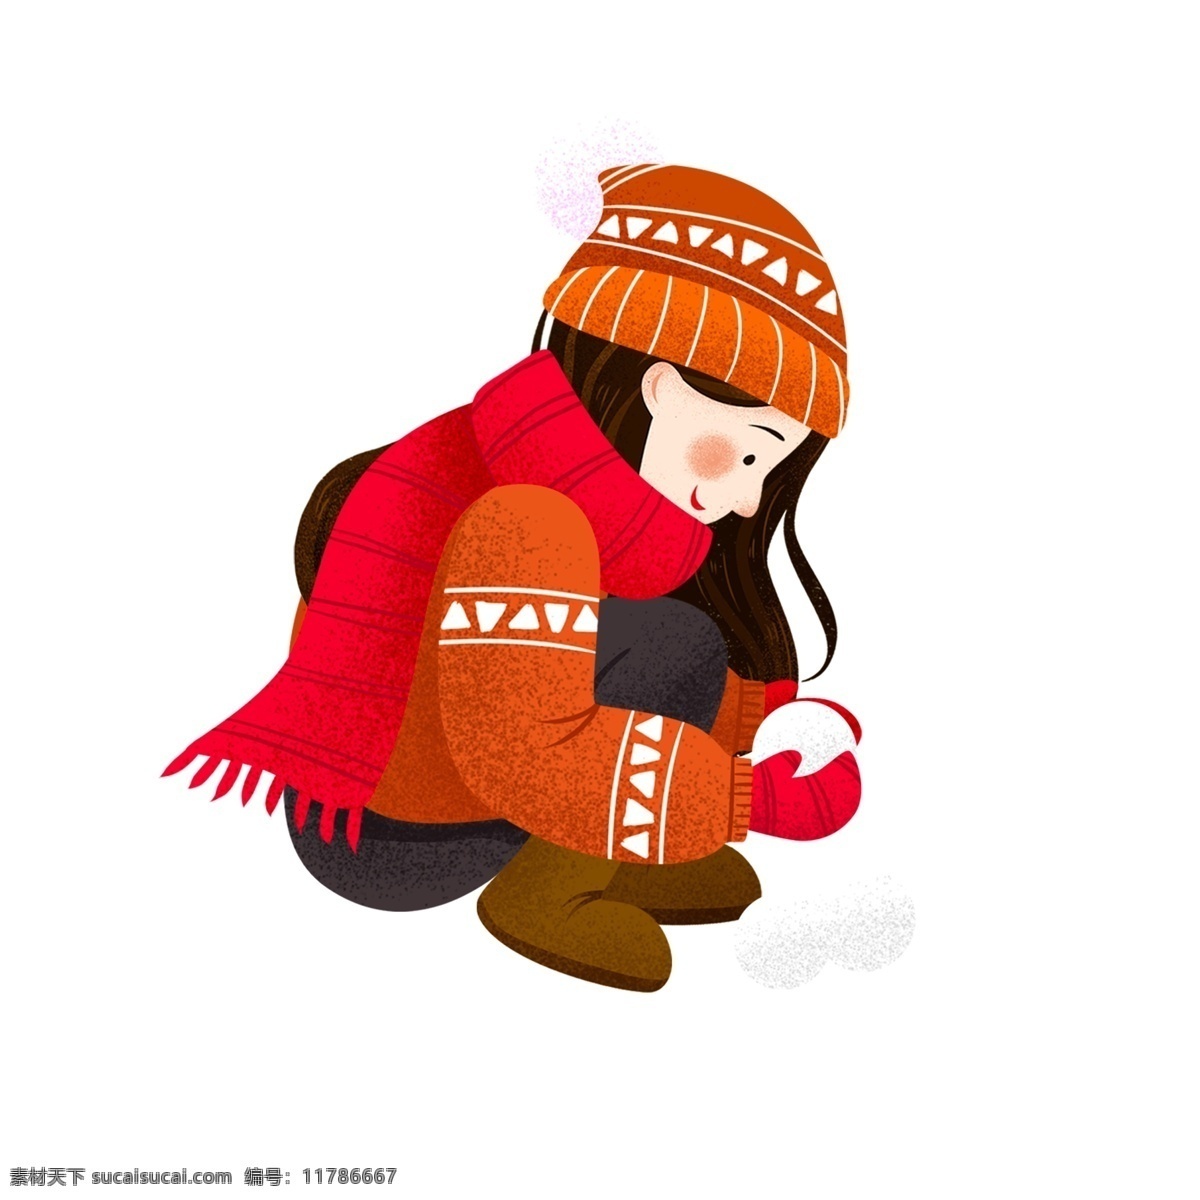 冬天 捏 雪球 女孩 人物 卡通 冬季 清新 唯美 手绘 复古 捏雪球 少女 小女生 人物设计